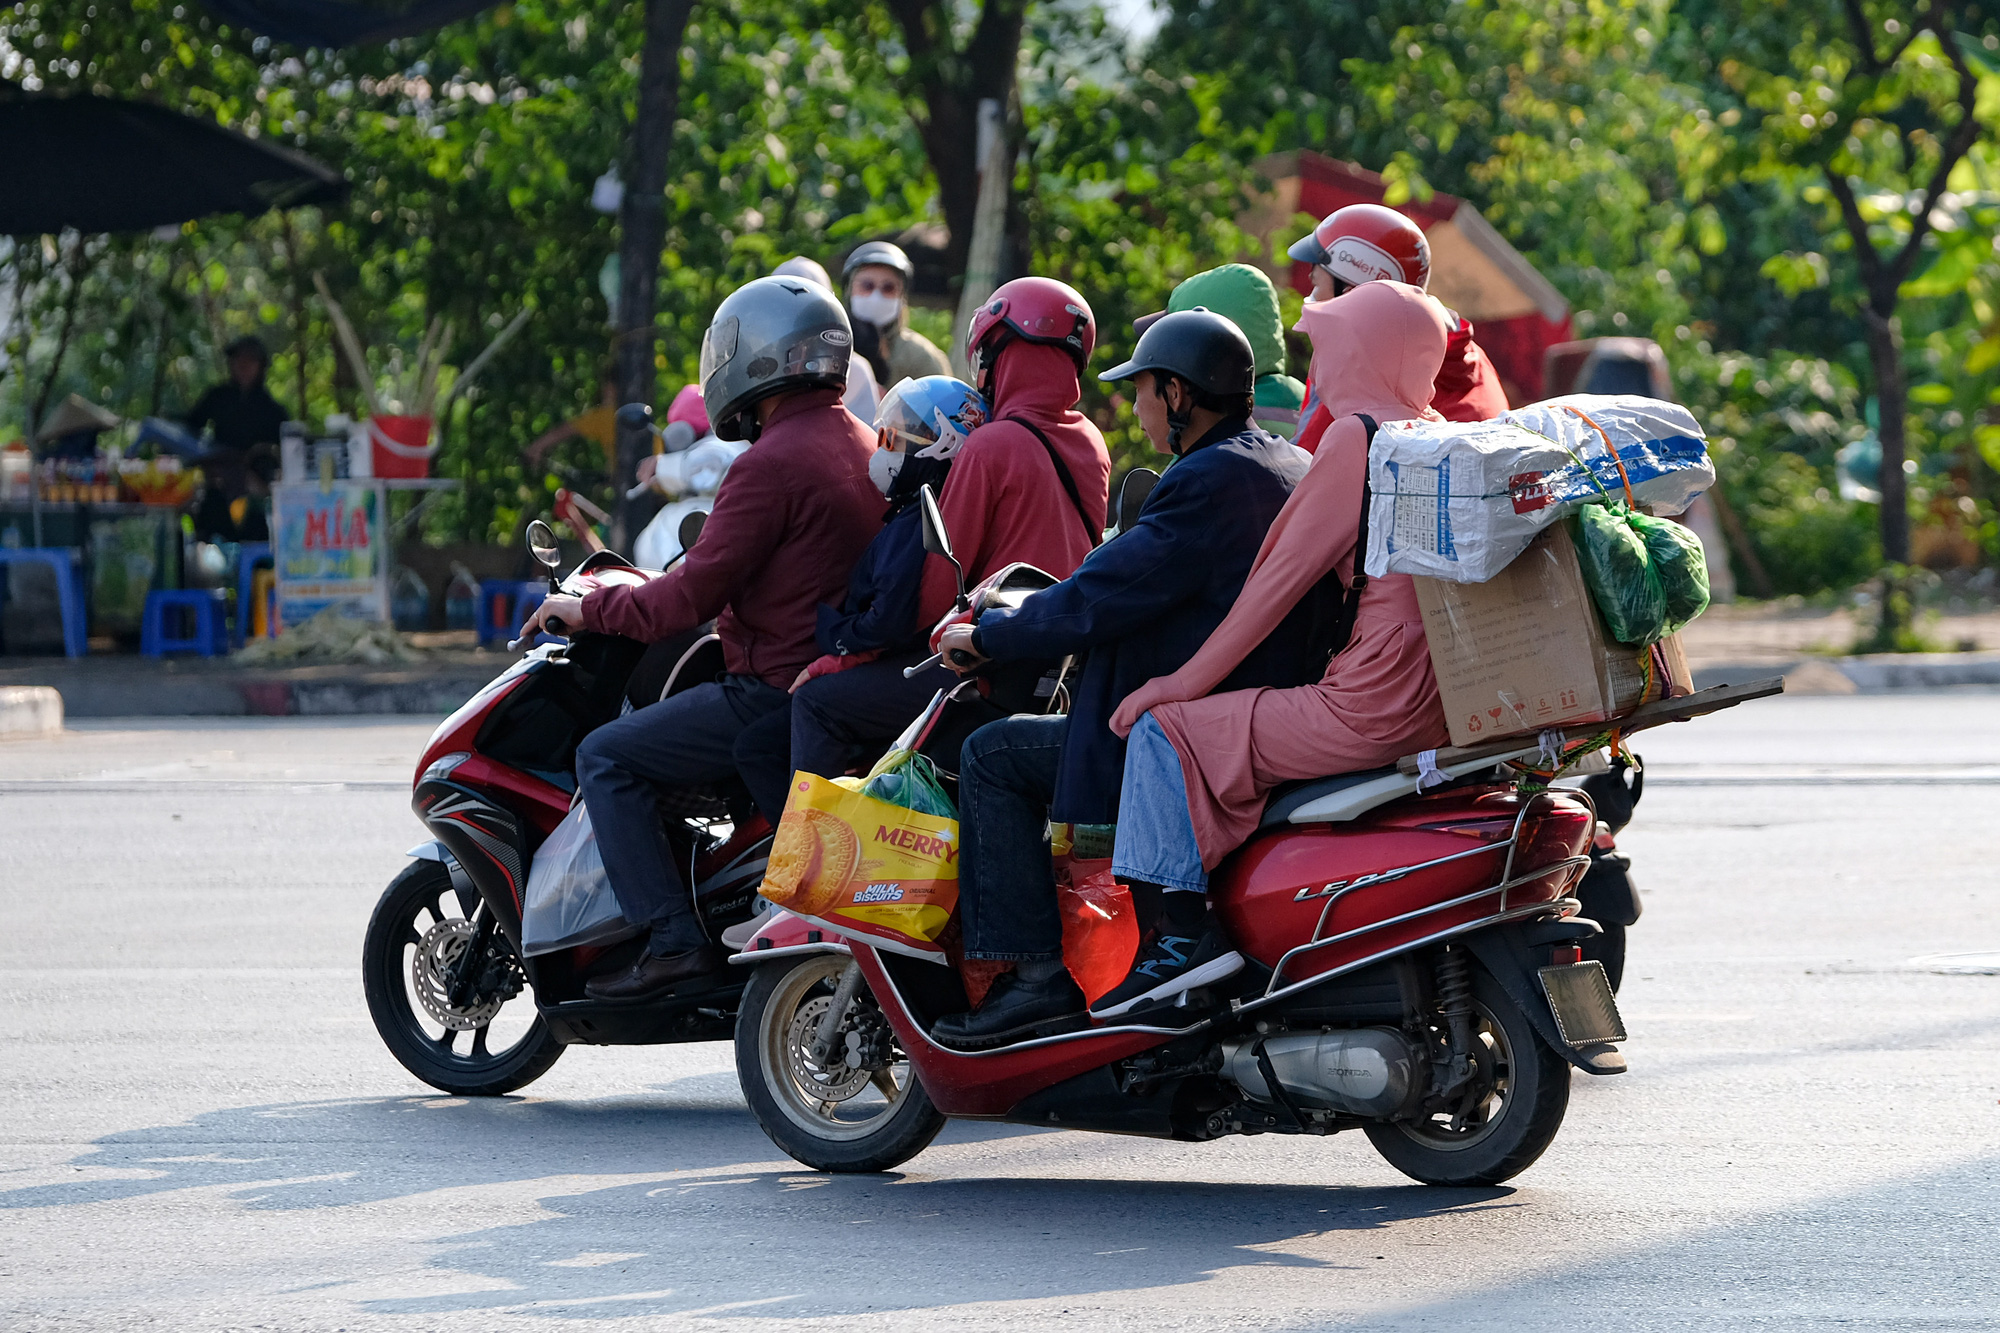 Người dân ùn ùn quay trở lại Hà Nội dù chưa kết thúc kỳ nghỉ lễ vì nỗi sợ tắc đường, giao thông khu vực cửa ngõ ùn ứ-4